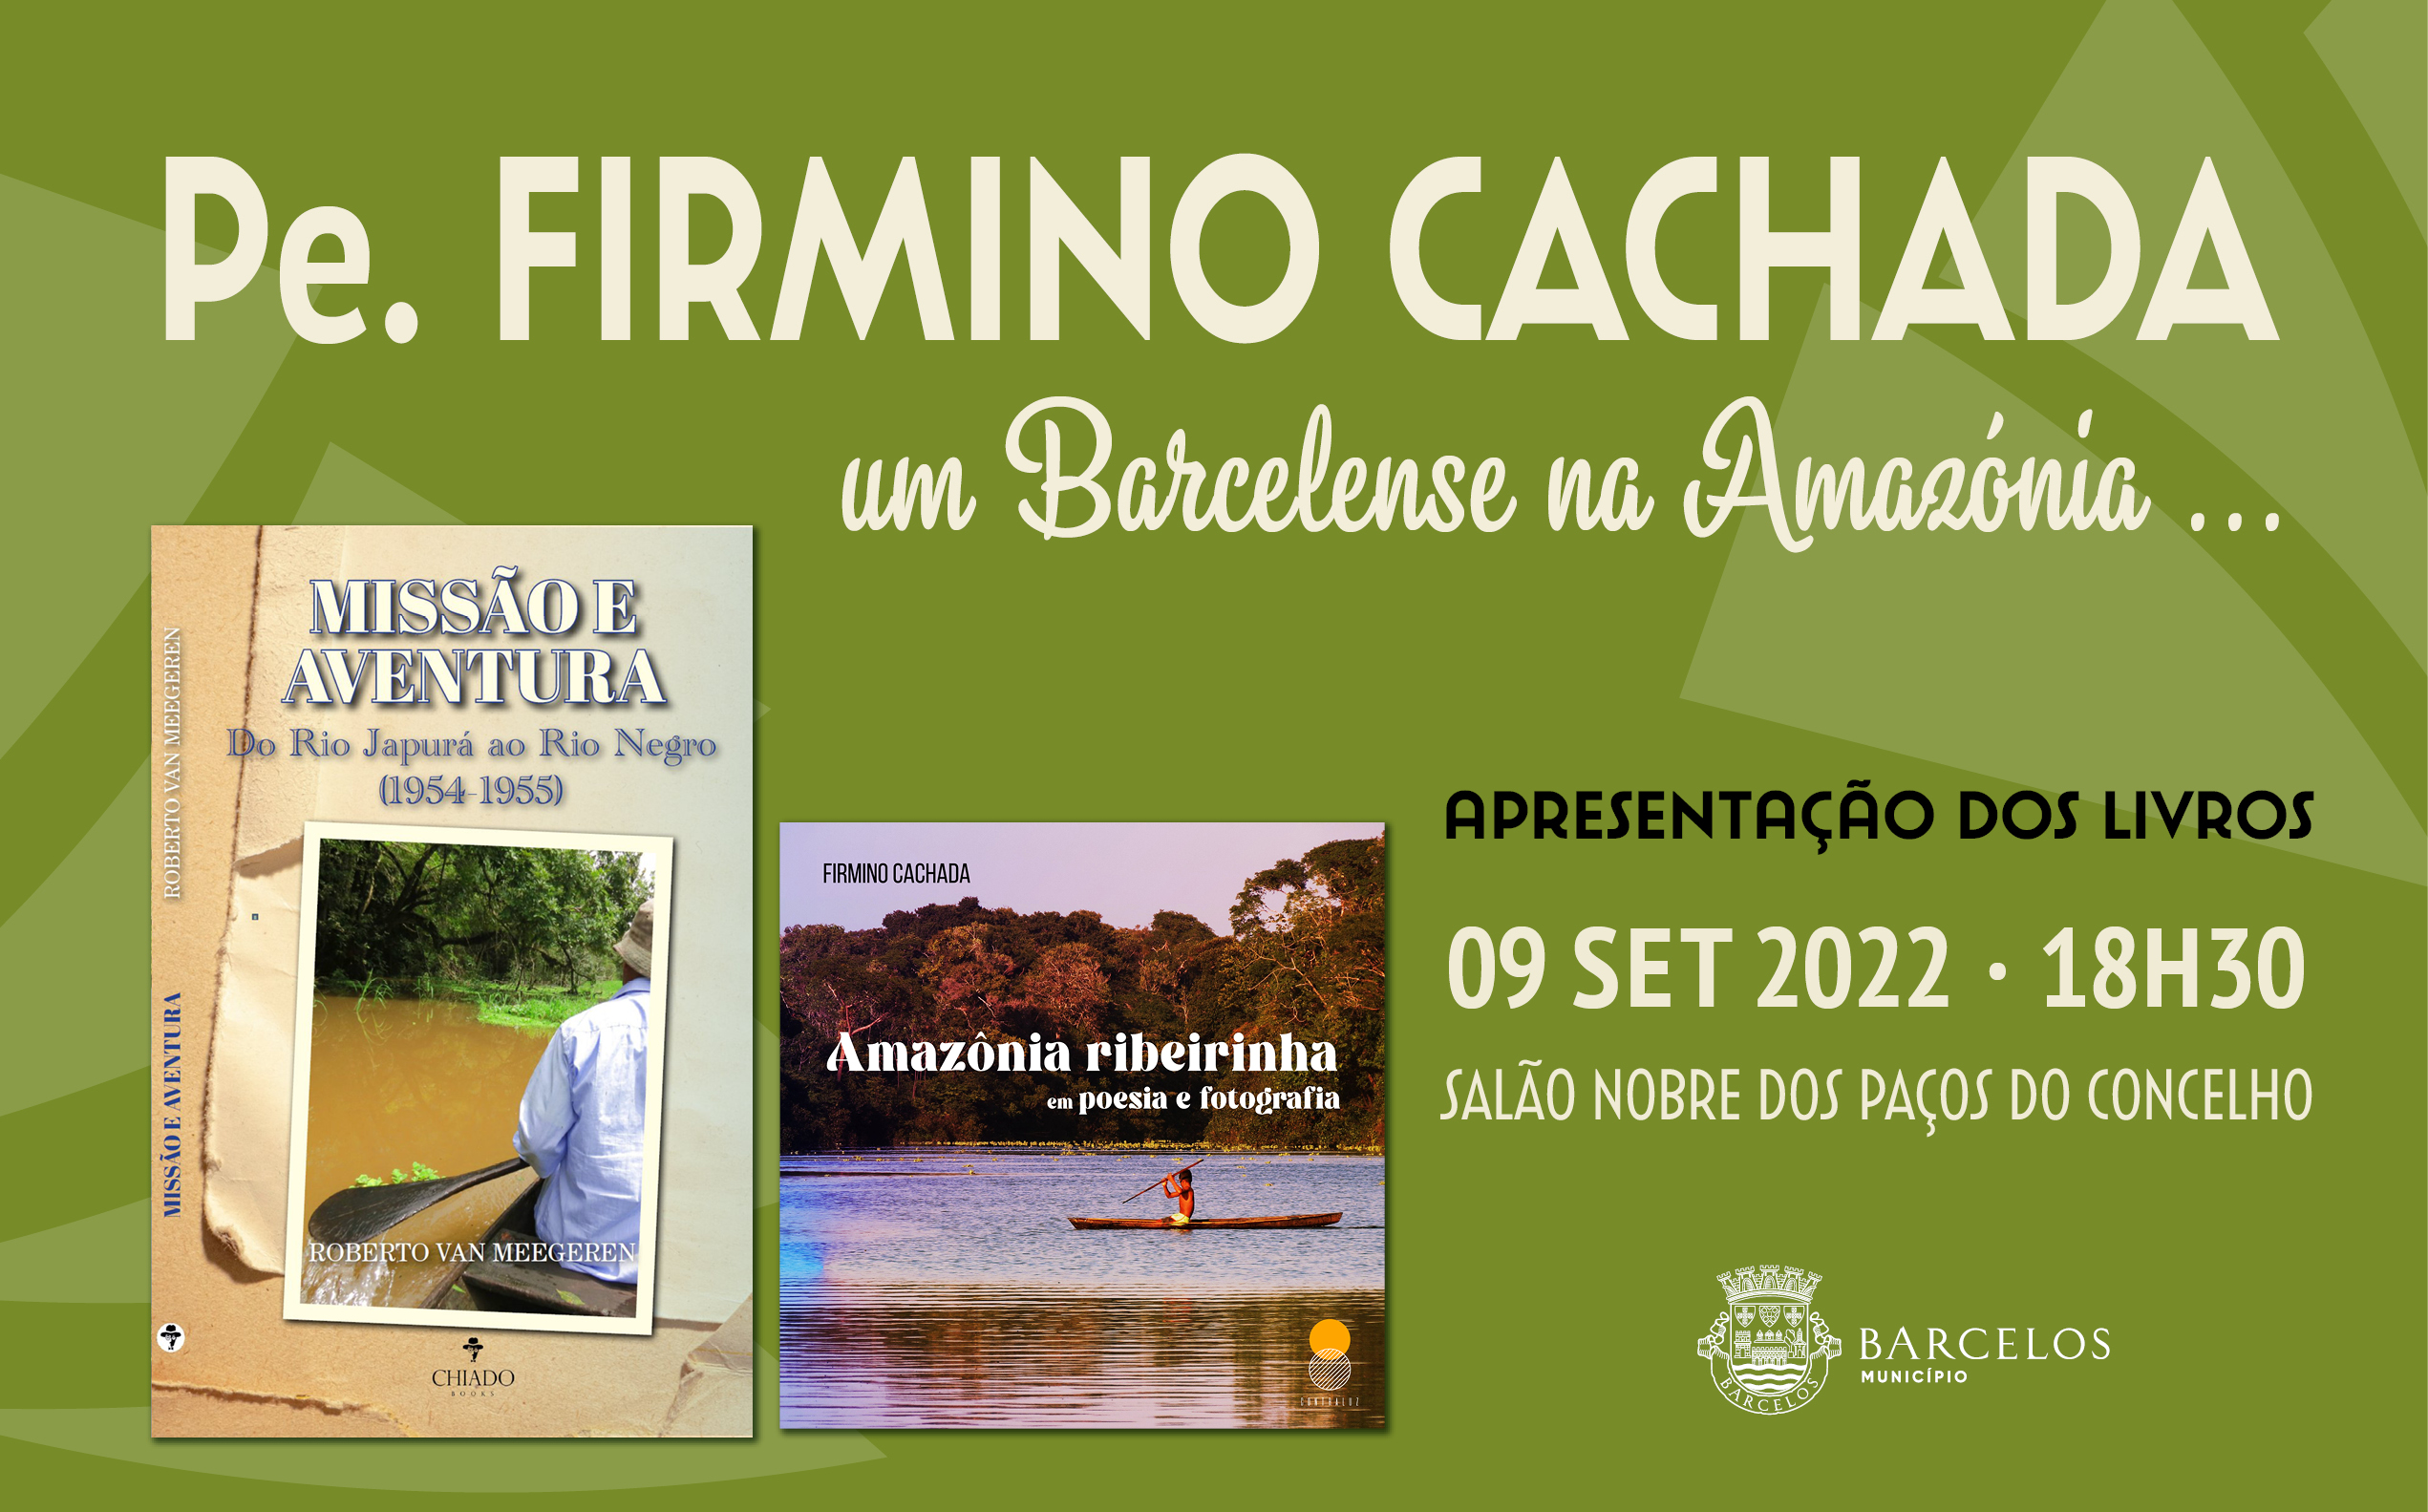 Padre Firmino Cachada apresenta dois livros no Salão Nobre